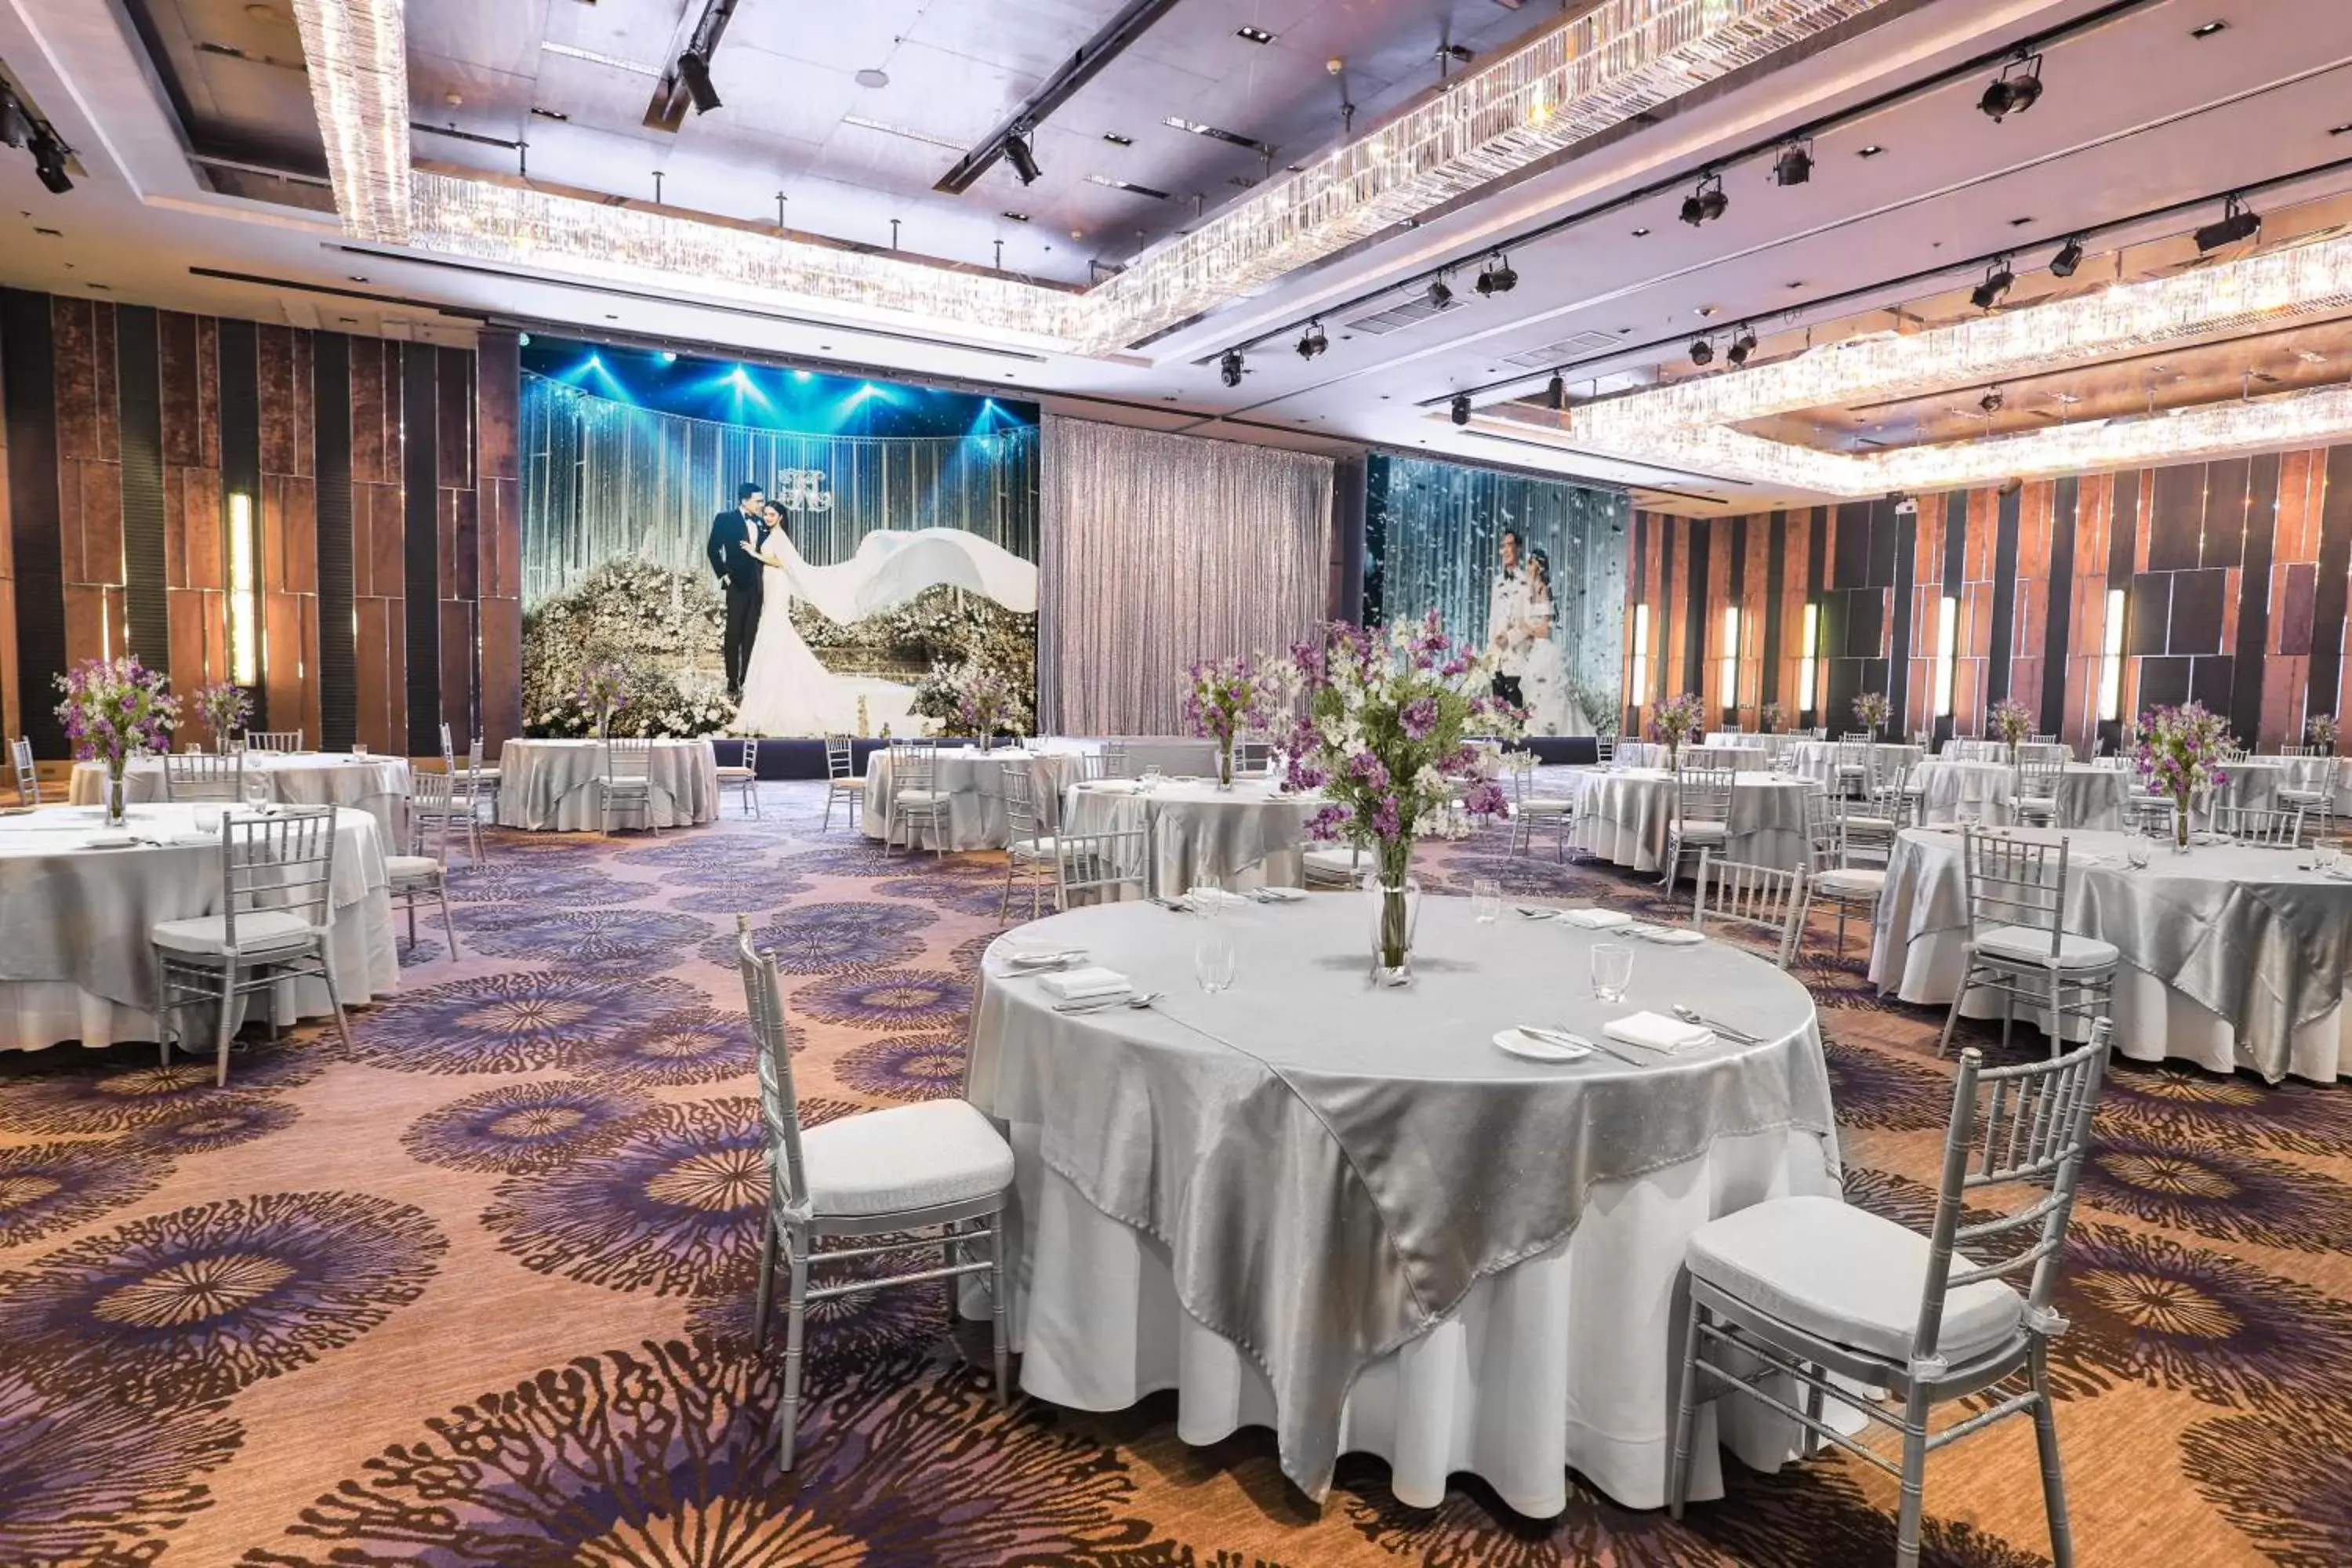 Banquet/Function facilities, Banquet Facilities in Renaissance Bangkok Ratchaprasong Hotel